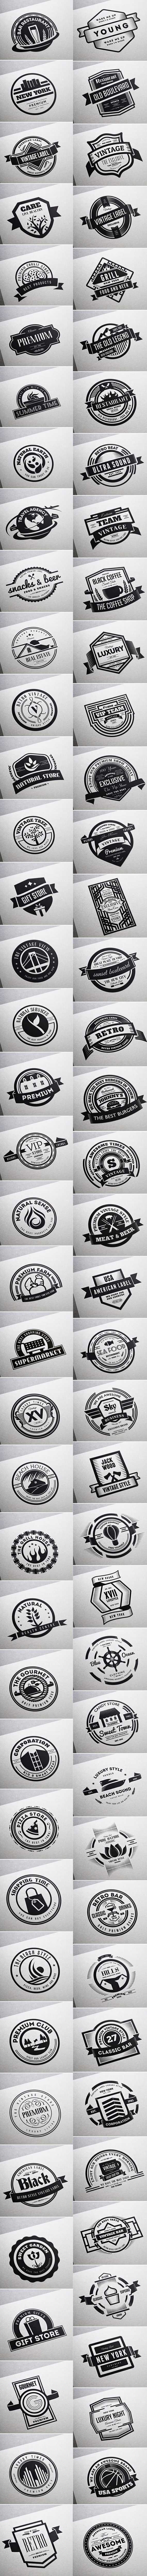 badge Badges bundle Classic emblem Hipster insignia Label logo logos vintage vintage logo vintage typography vintage labels vintage badges